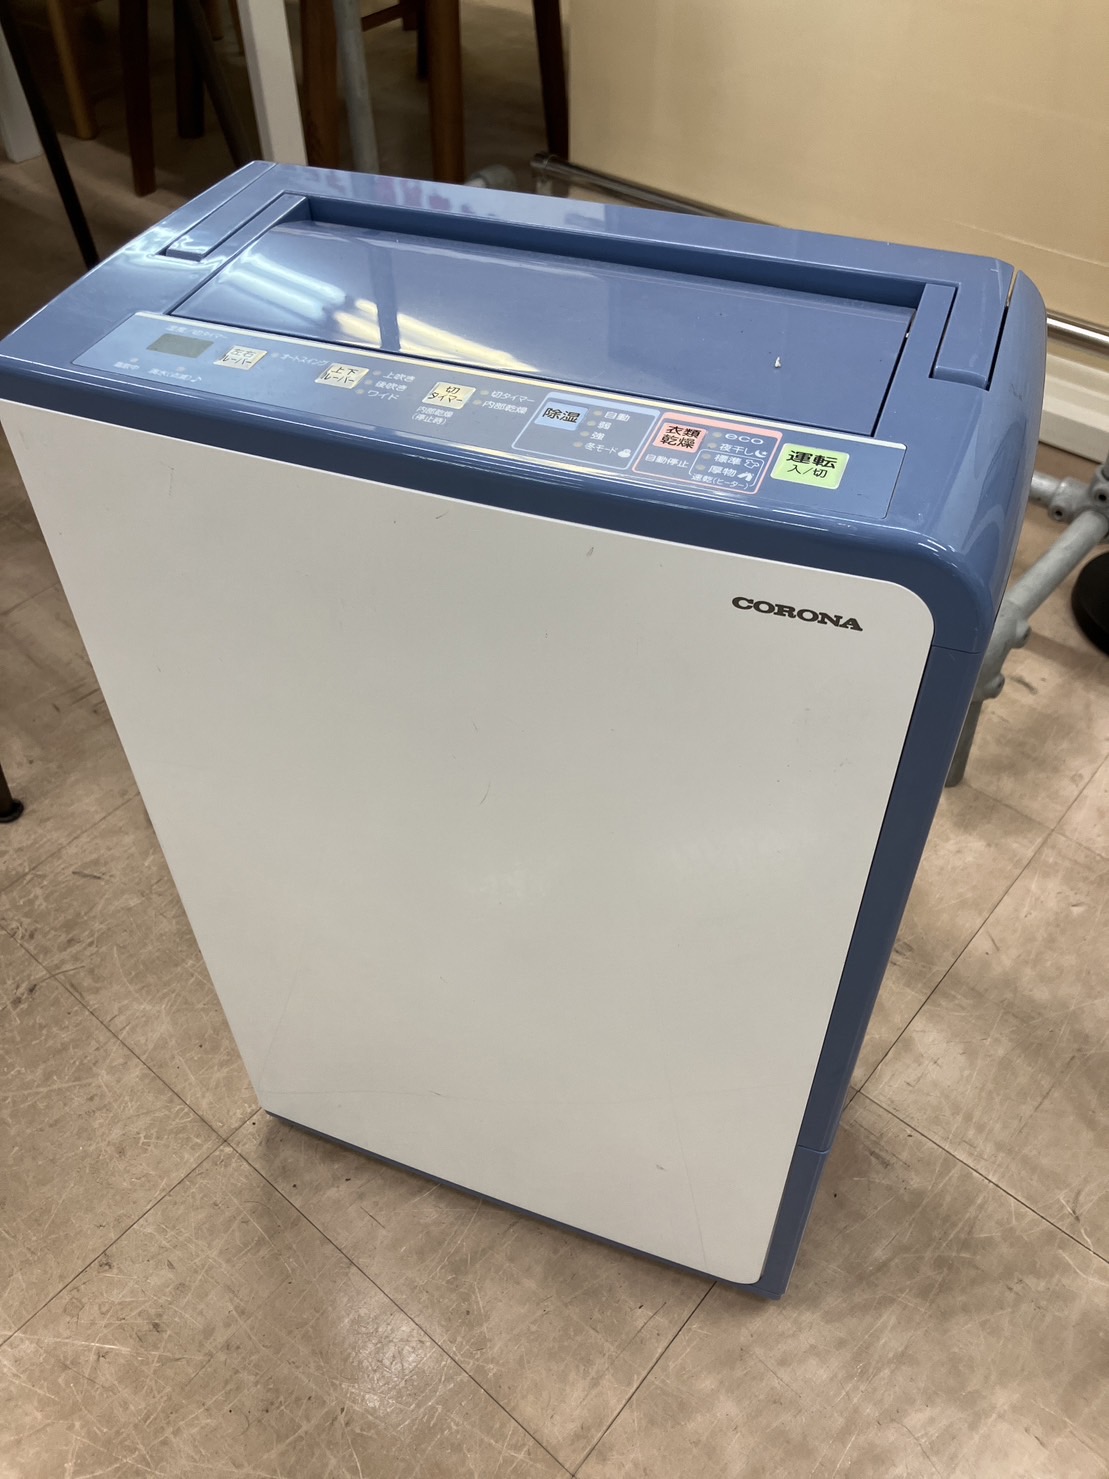 CORONA 衣類乾燥除湿機 BD-H187 コロナ コンプレッサー式 をお買取致しました！ - リサイクルマートは現在冷蔵庫の買取、家具の買取強化中です！お気軽にお問い合わせください。